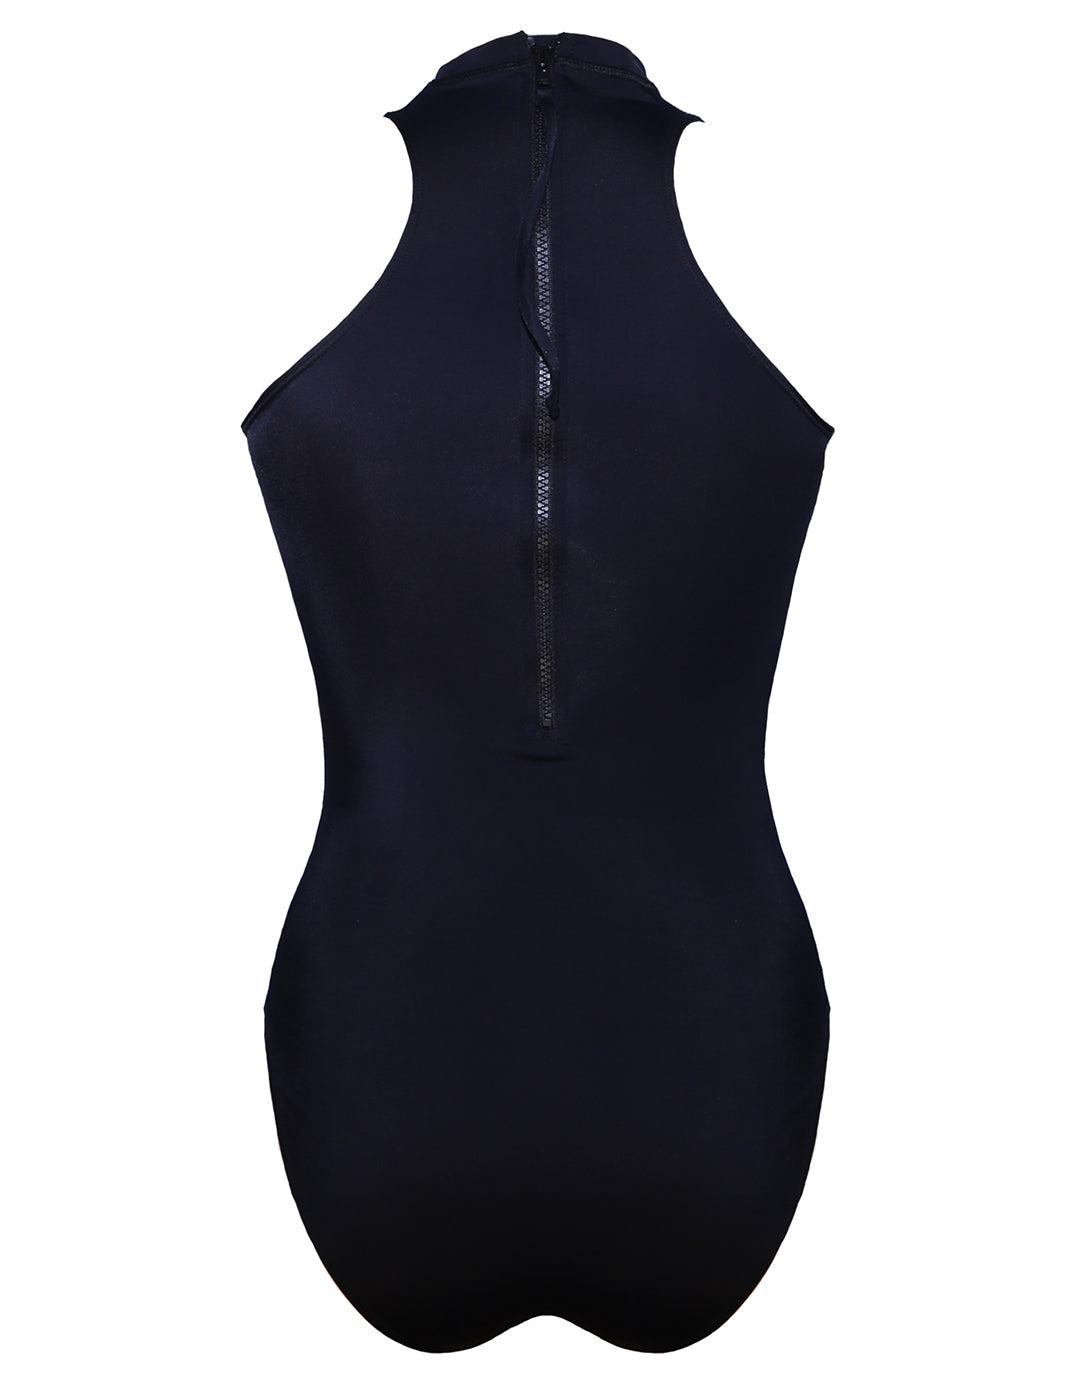 Sleek Longer Length Swimsuit - Black